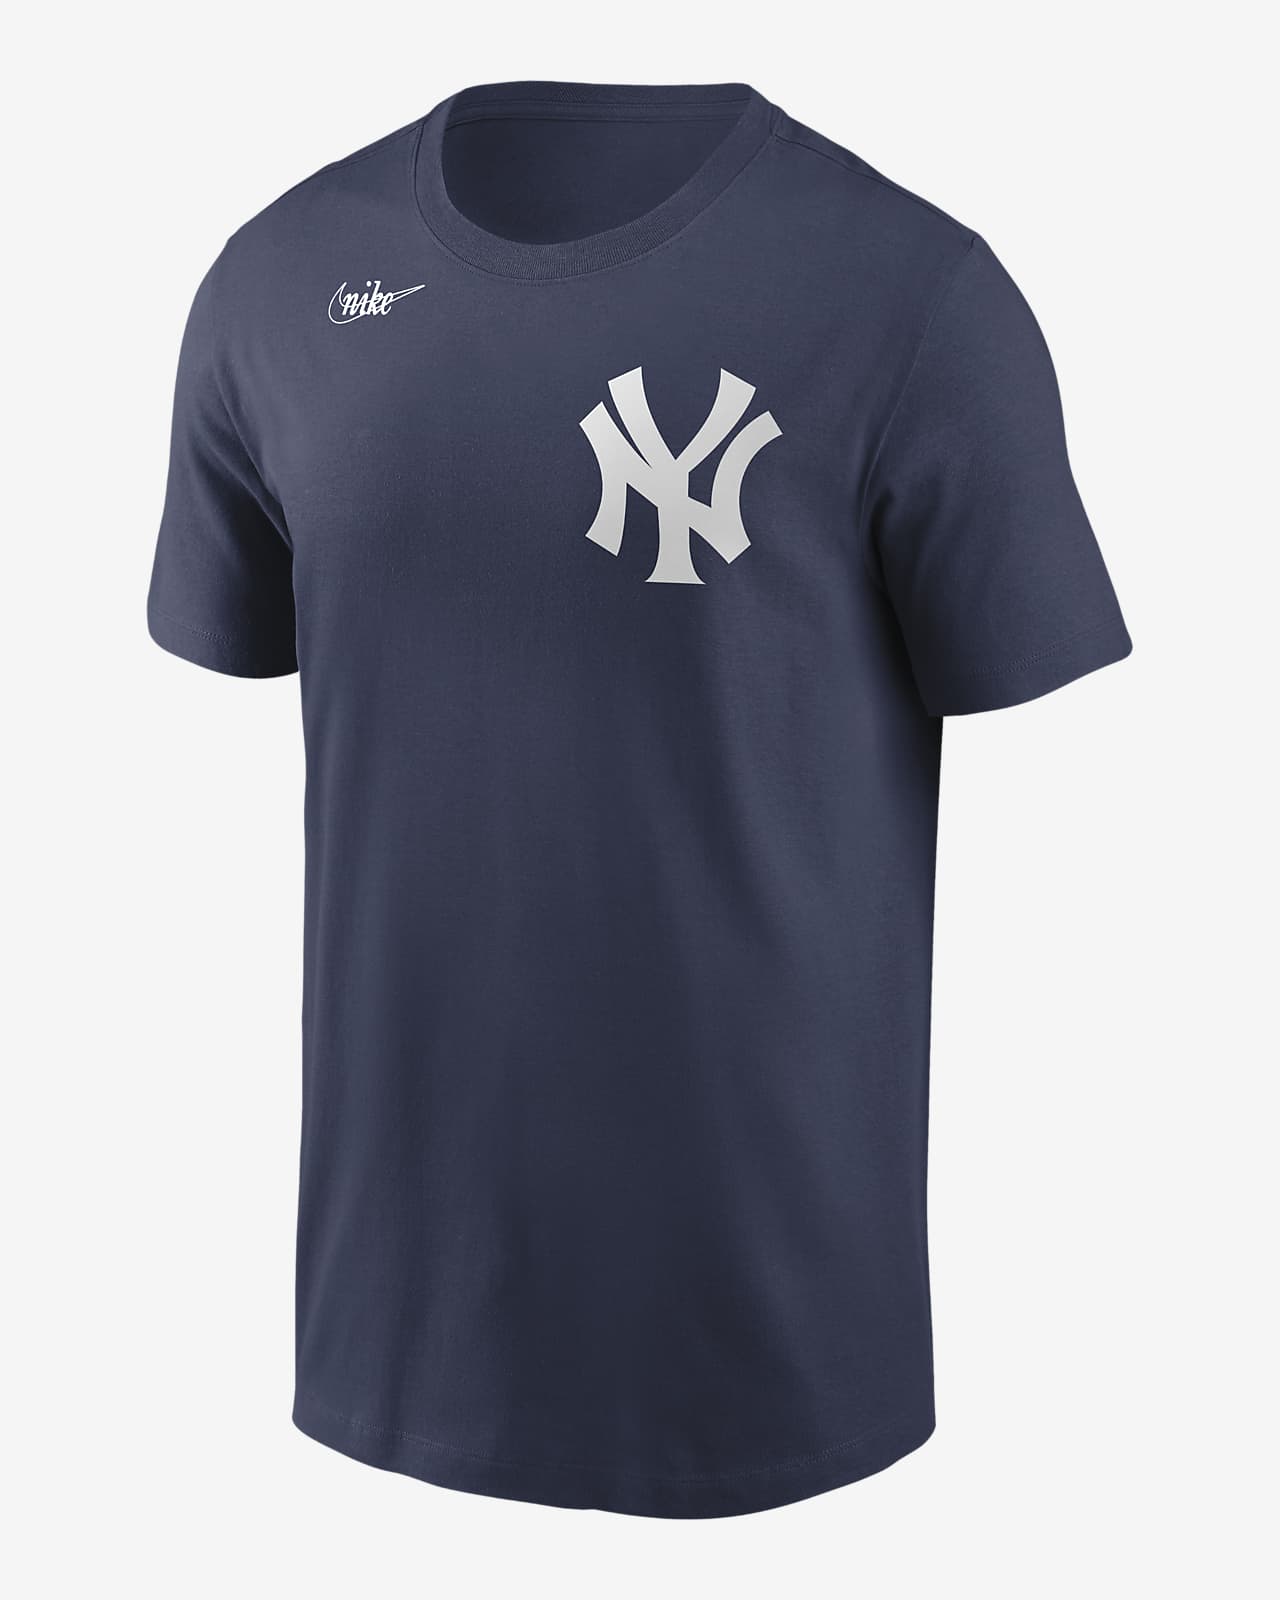 Playera para hombre MLB New York Yankees (Mickey Mantle)